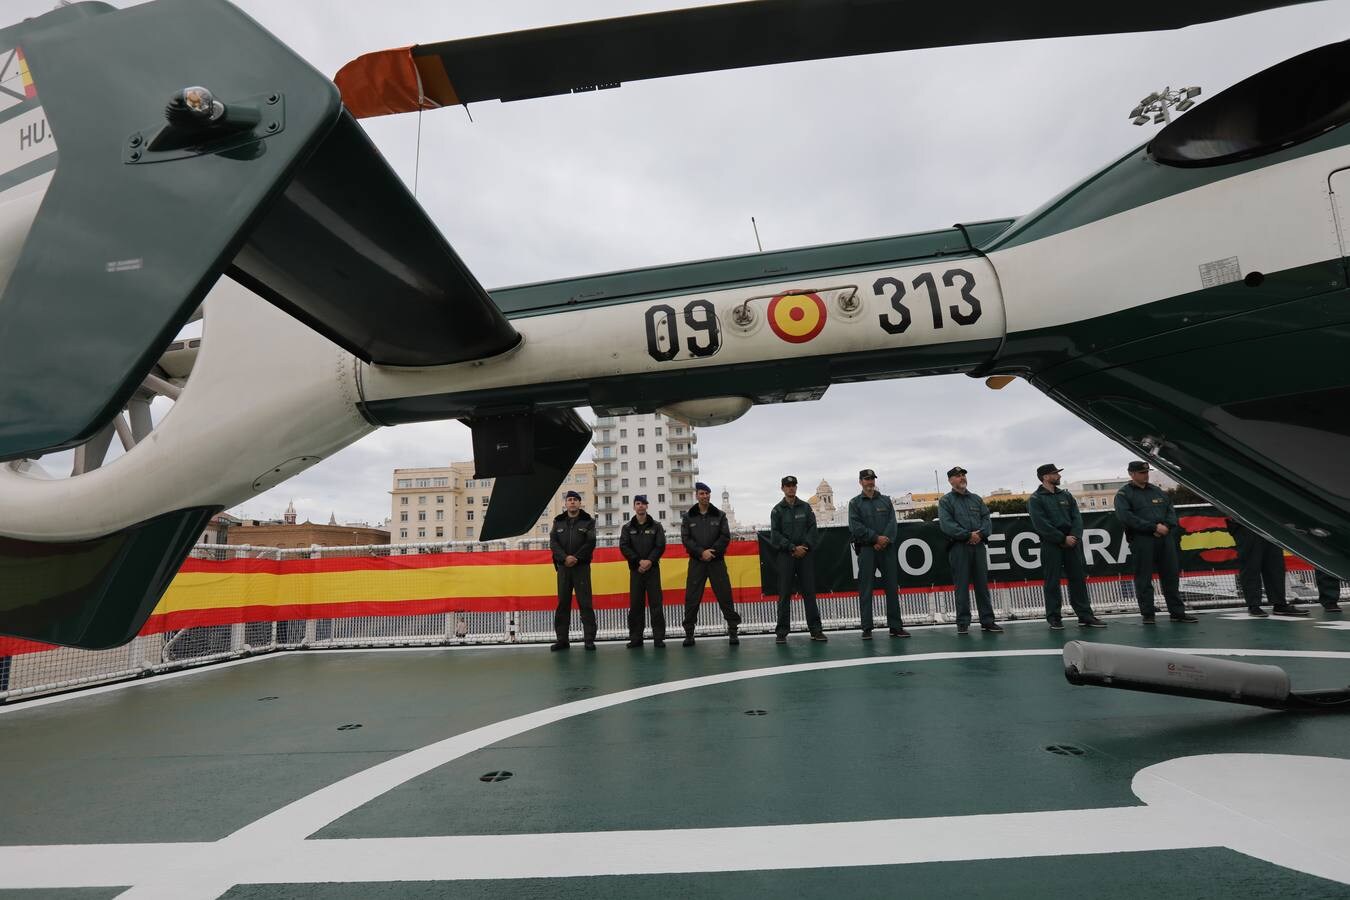 FOTOS: 25 aniversario de la creación del Servicio Marítimo de la Guardia Civil